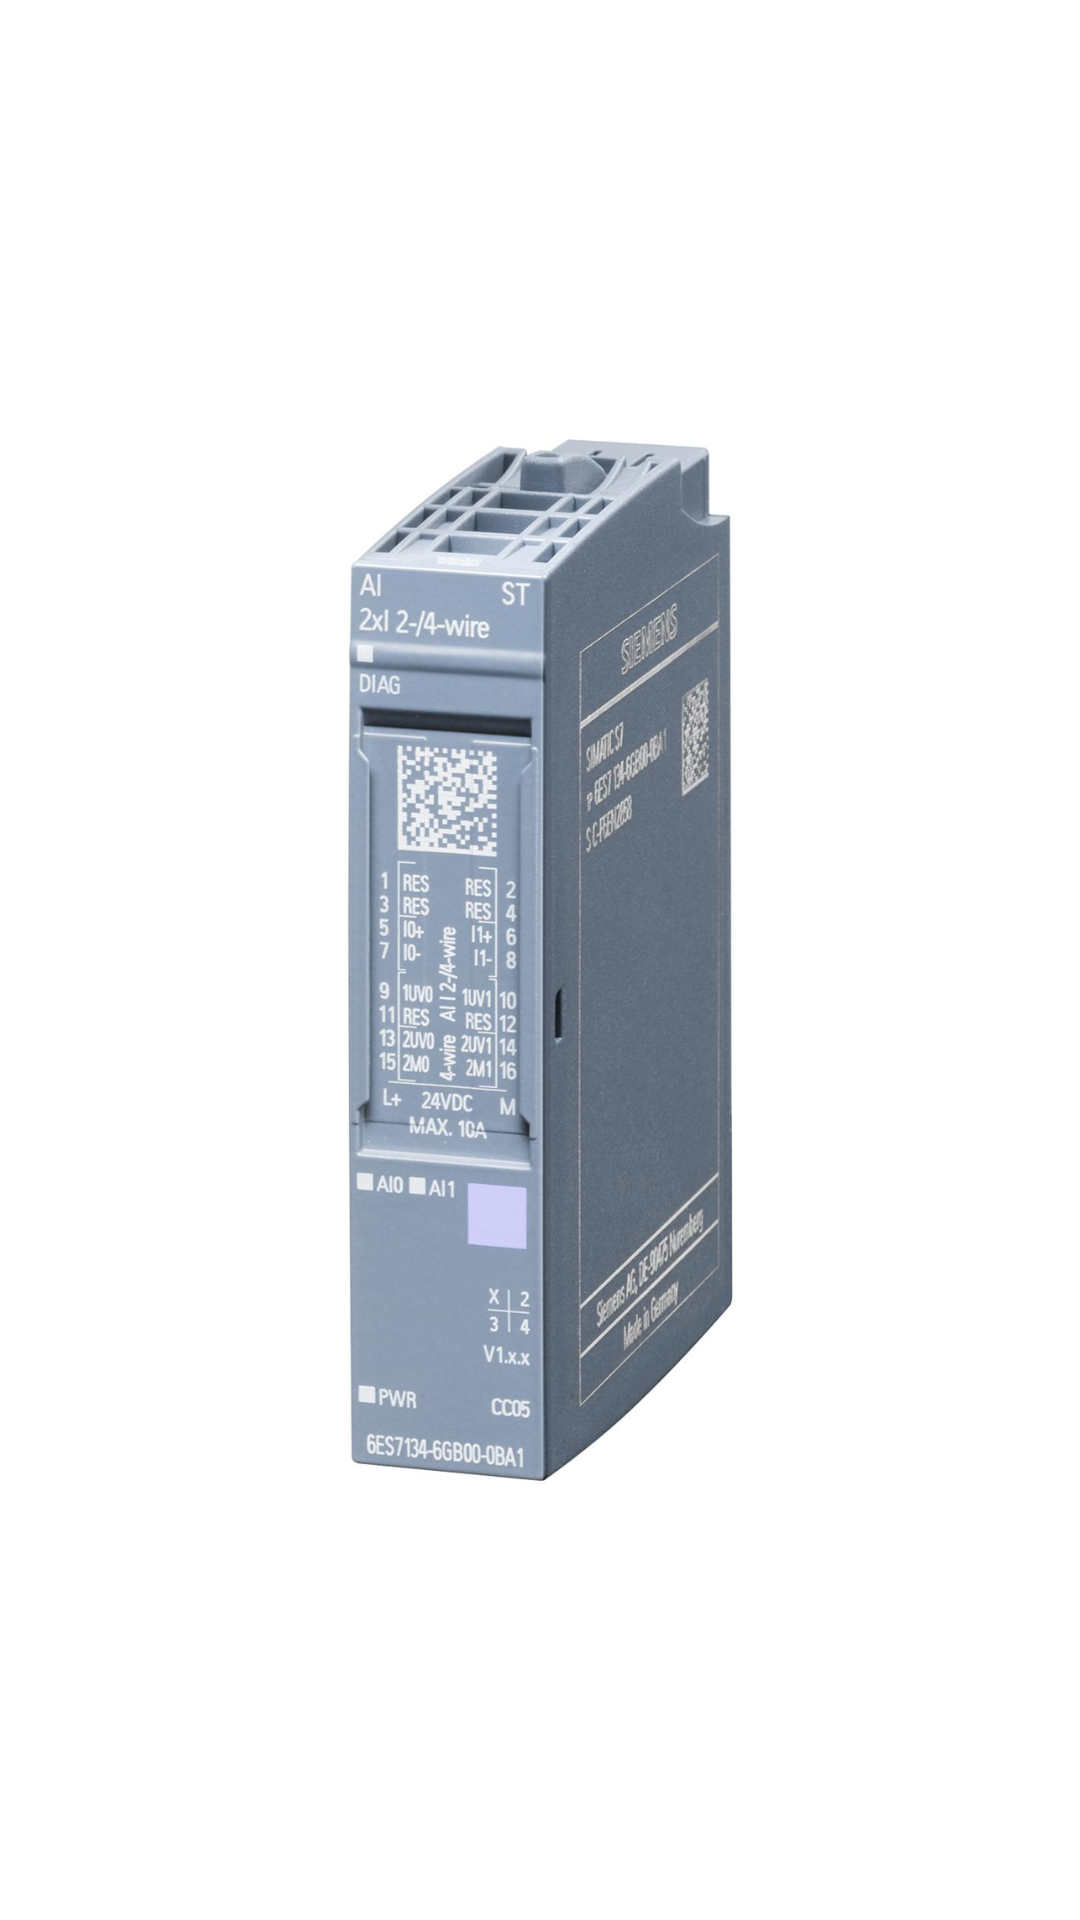 6ES7134-6GB00-0BA1 Siemens SIMATIC ET 200SP, digital output module, AI 2xI 2-/4-wire Standard, Pack quantity: 1 unit, suitable for BU type A0, A1, Color code CC05, Module diagnostics, 16 bit